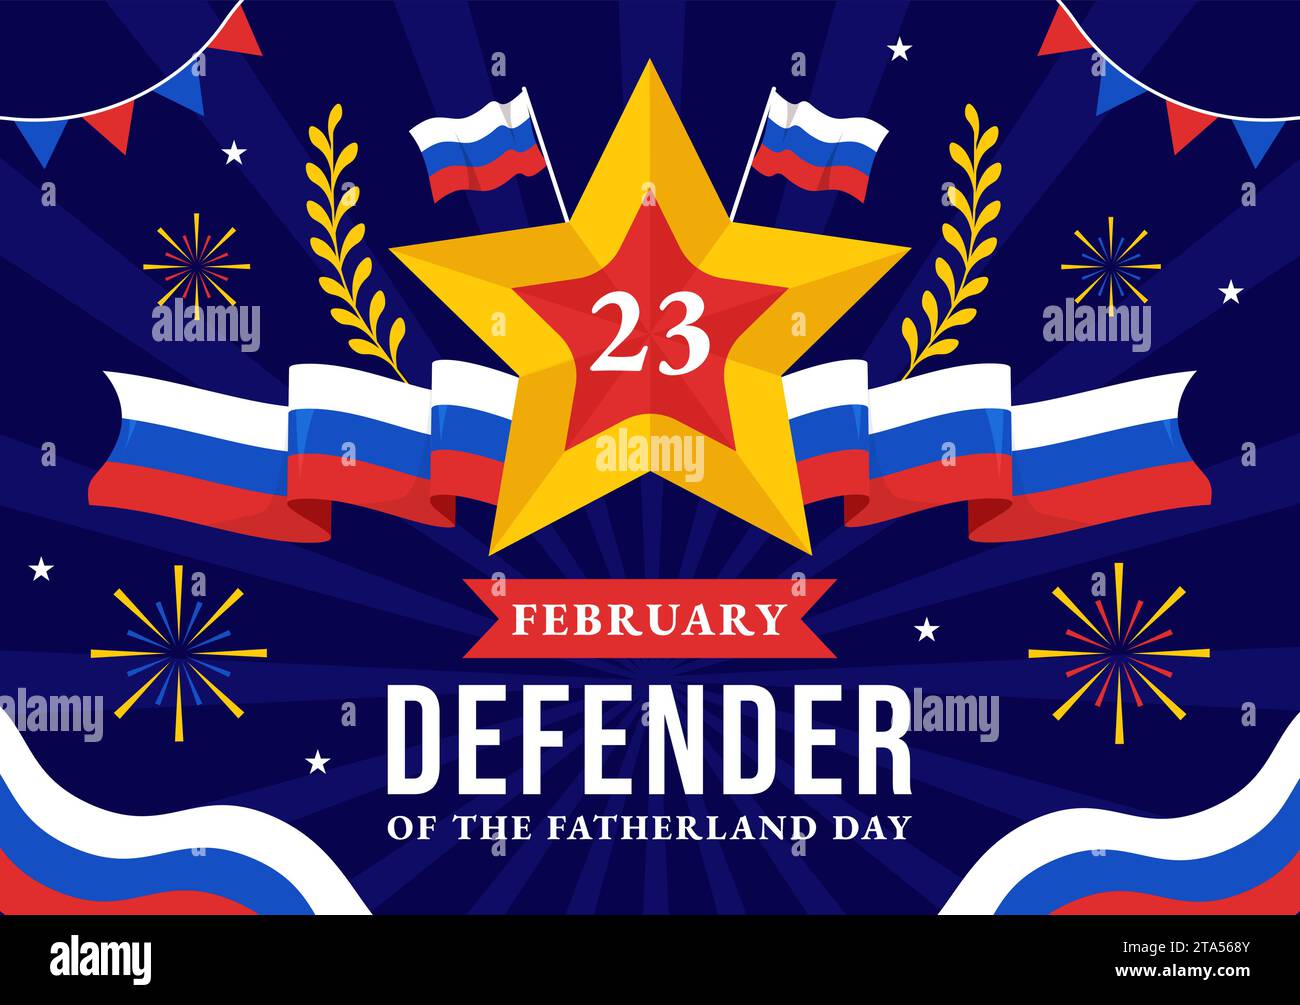 Vektor-Illustration des Vaterlandtags am 23. Februar mit russischer Flagge und Stern im Nationalfeiertag Russlands flacher Zeichentrickhintergrund Stock Vektor